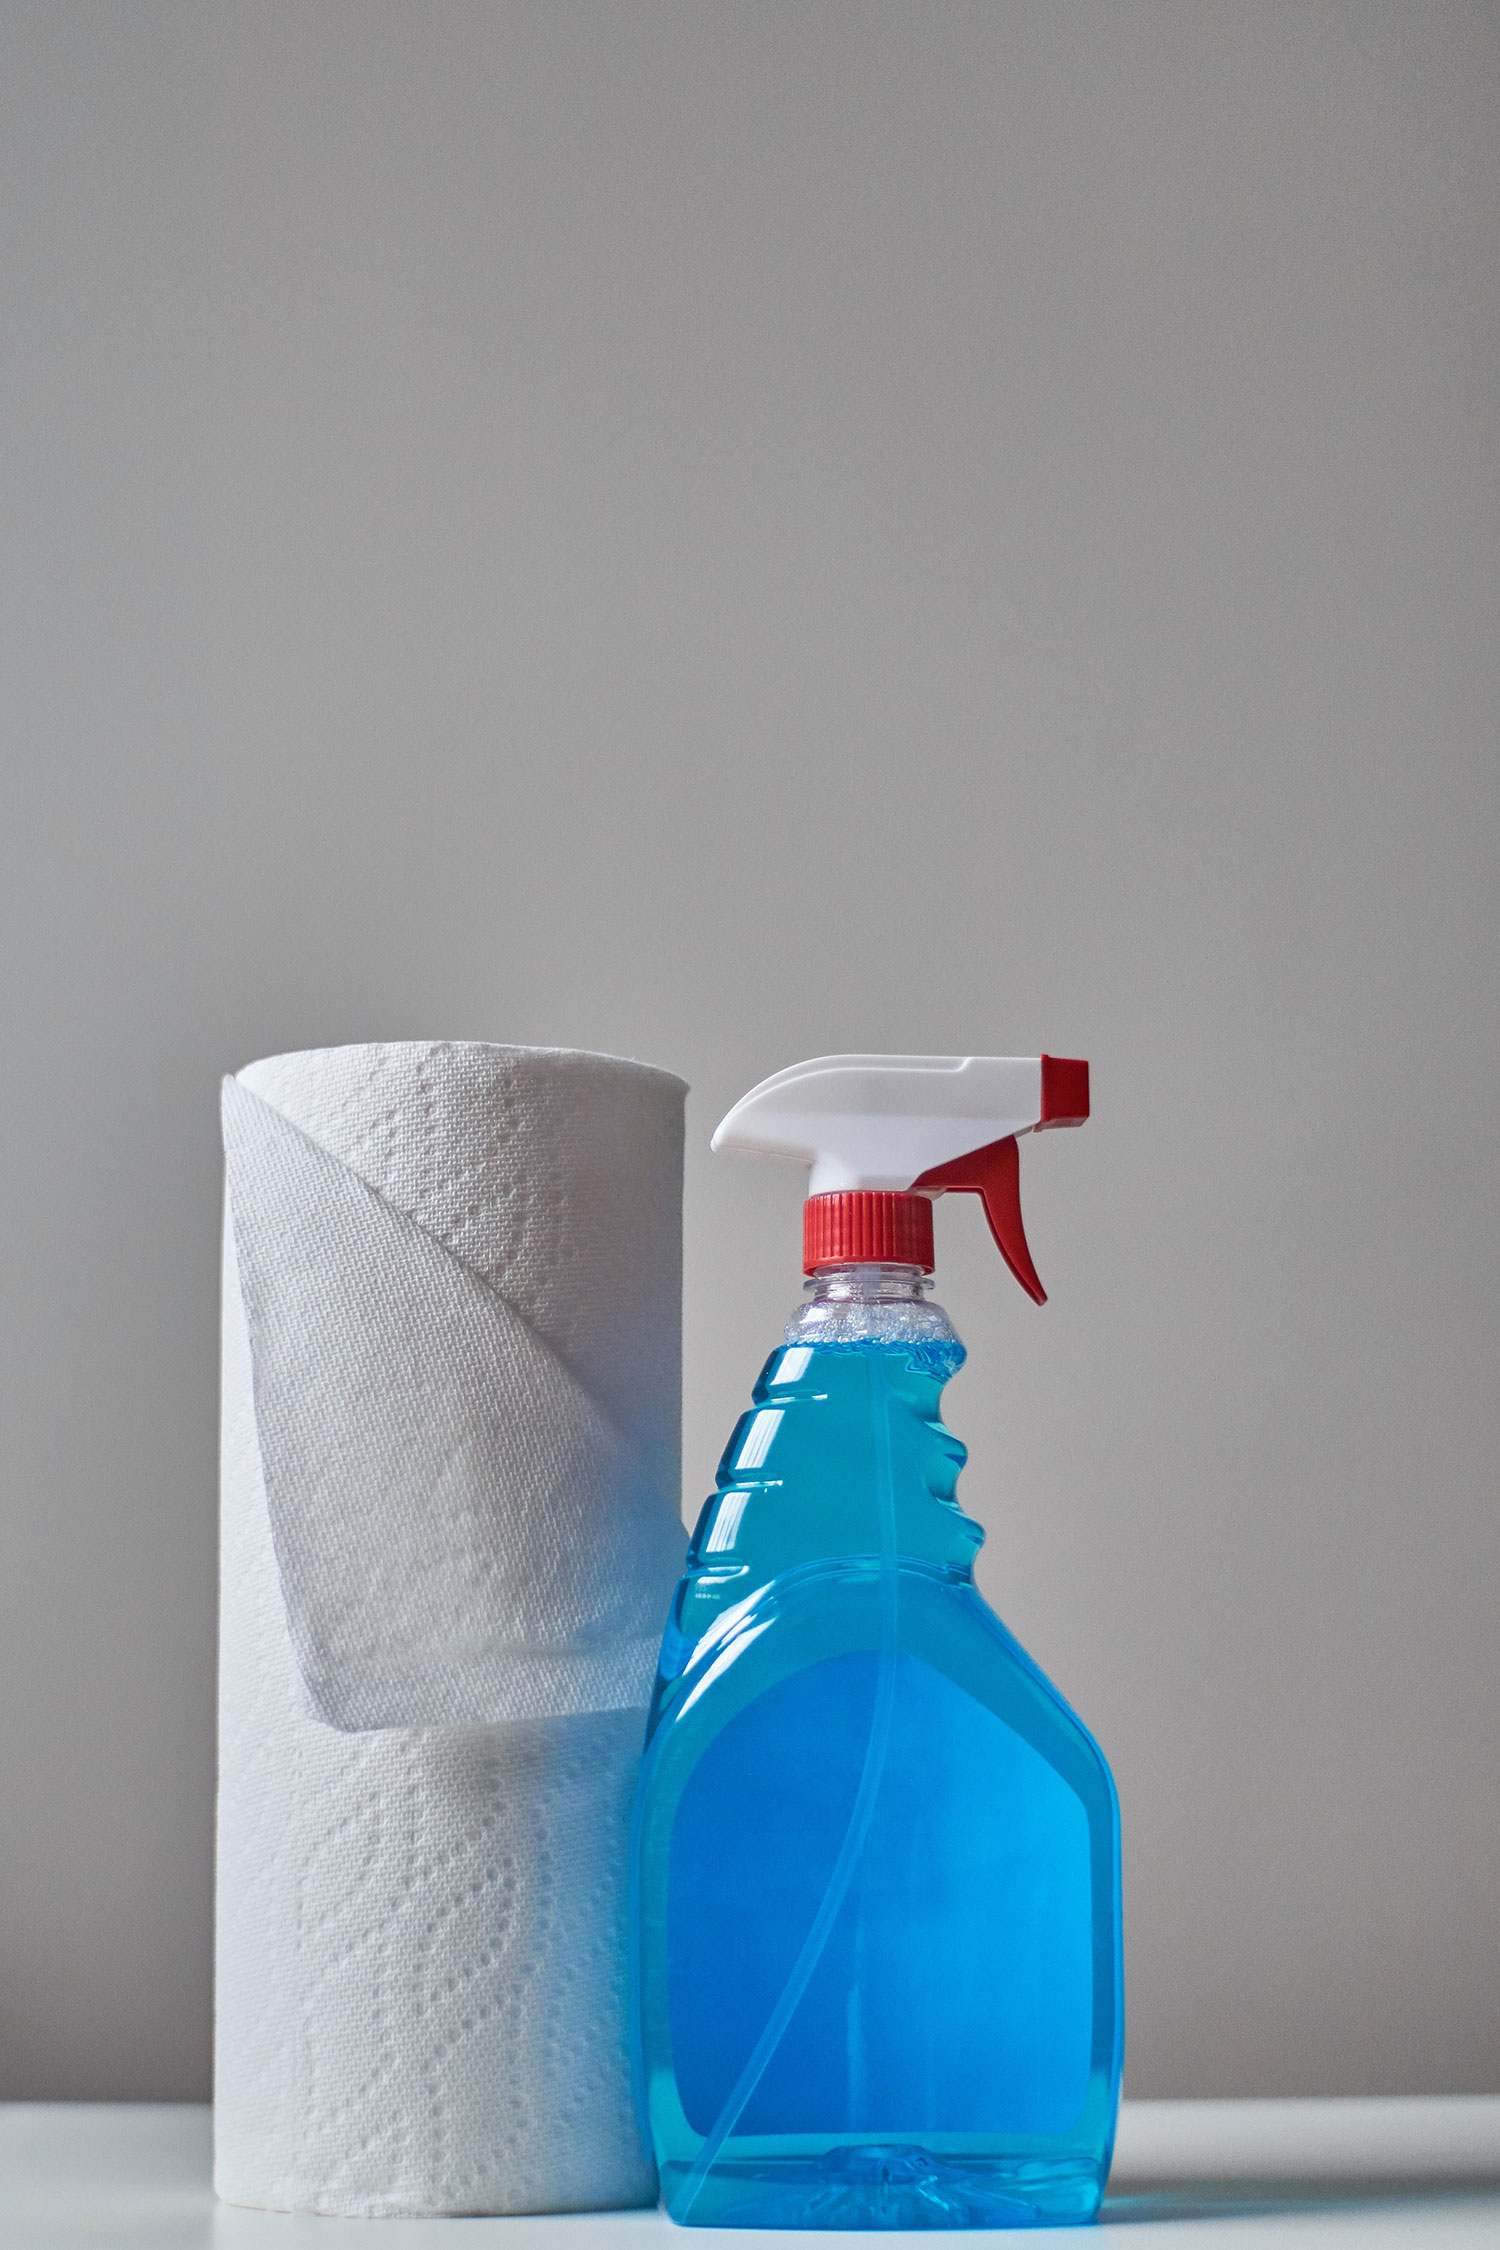 Minimize os riscos à saúde durante a limpeza com estas dicas